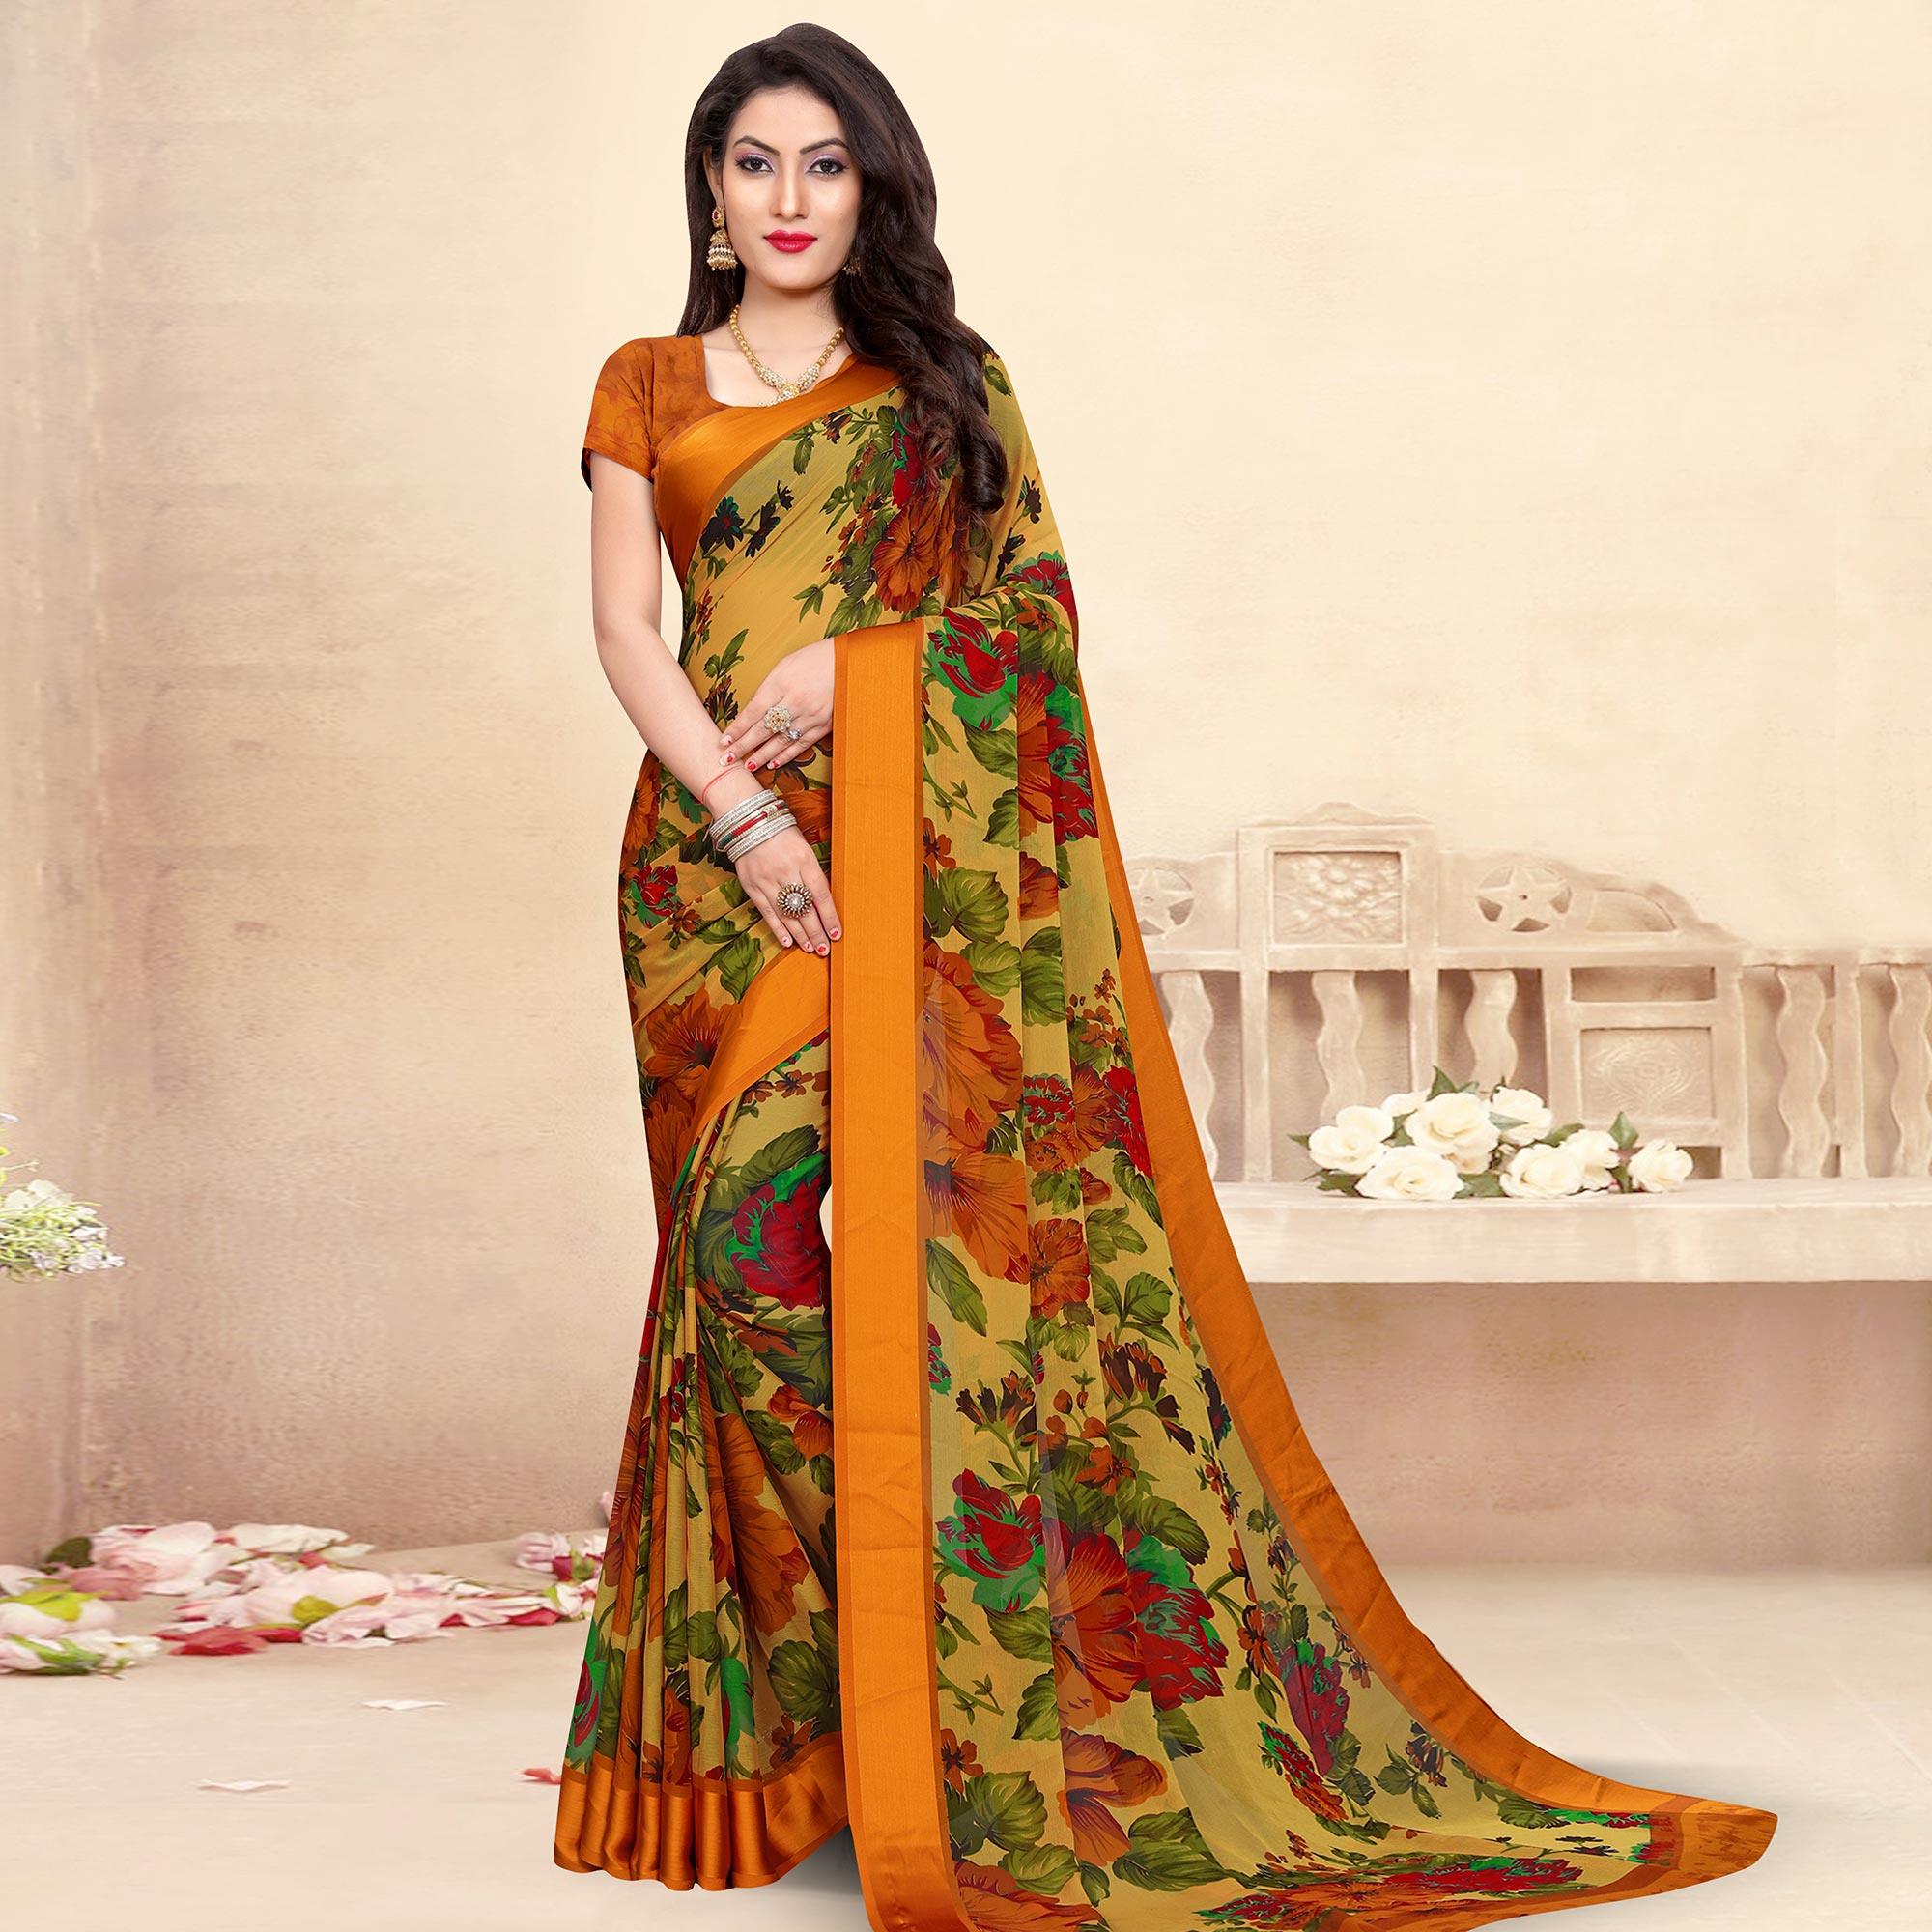 Multicolored Casual Wear Floral Printed Satin Border Chiffon Saree - Peachmode